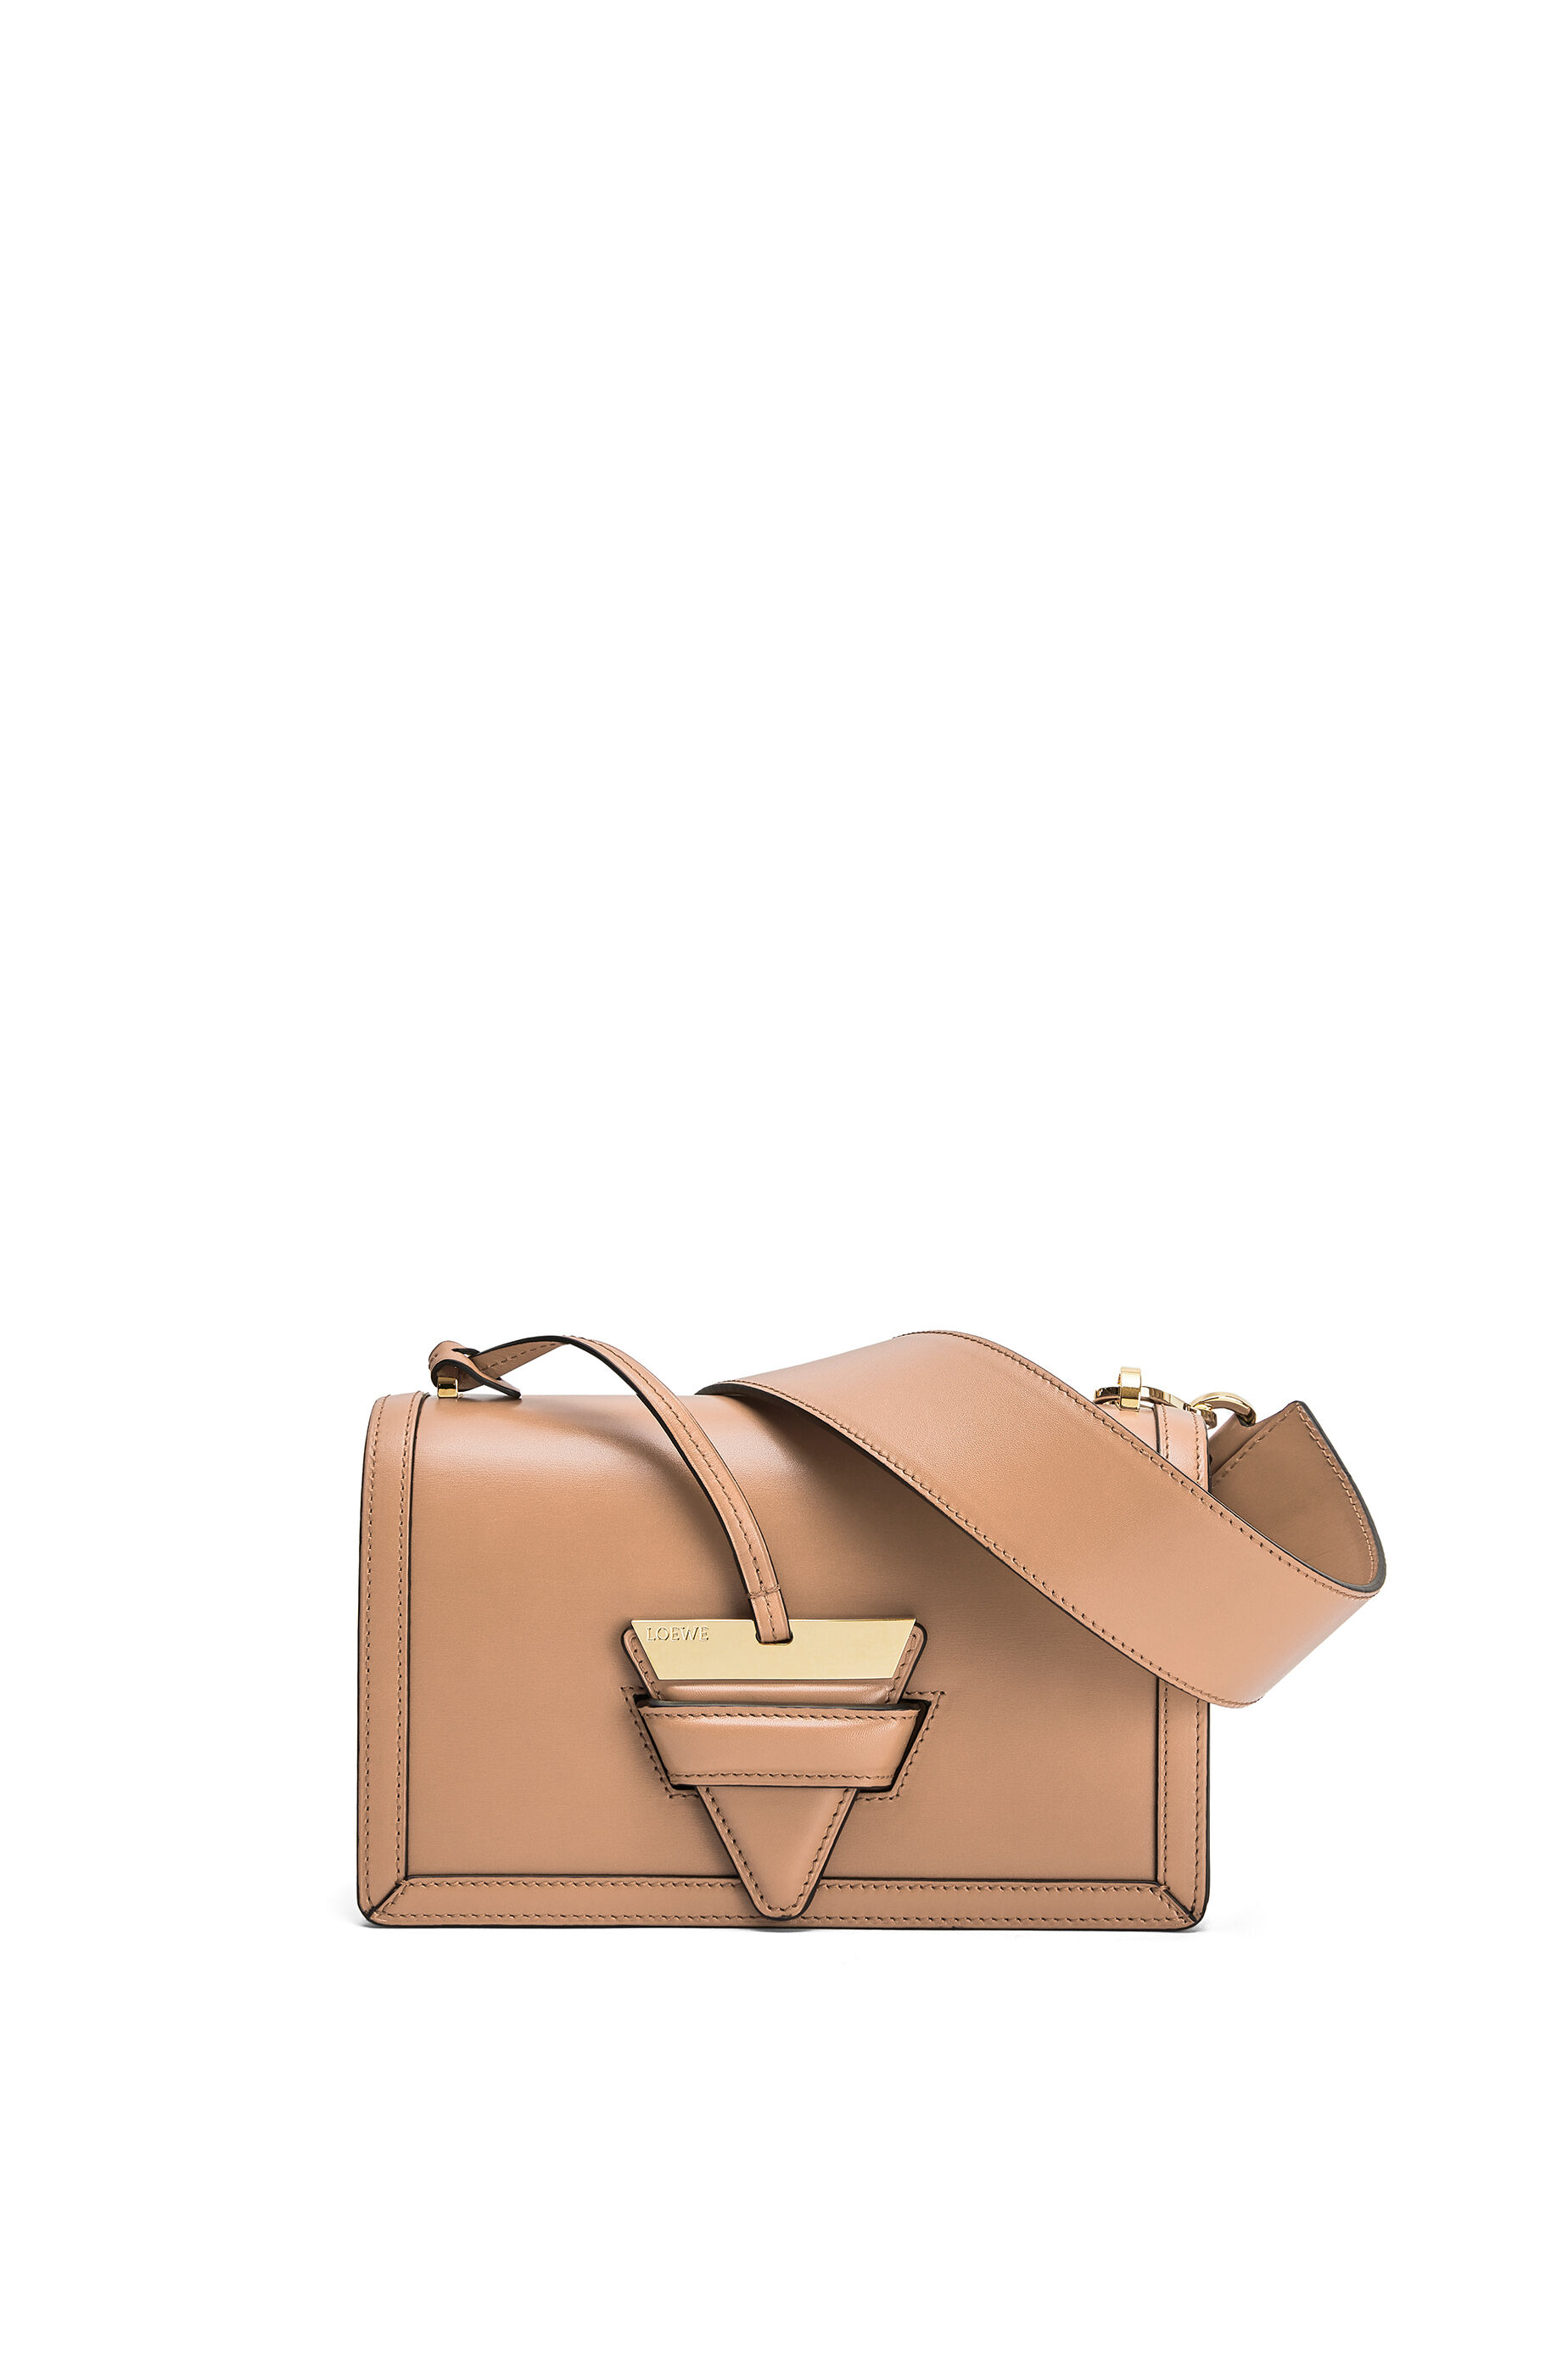 ロエベの30代におすすめのバッグはバルセロナバッグです